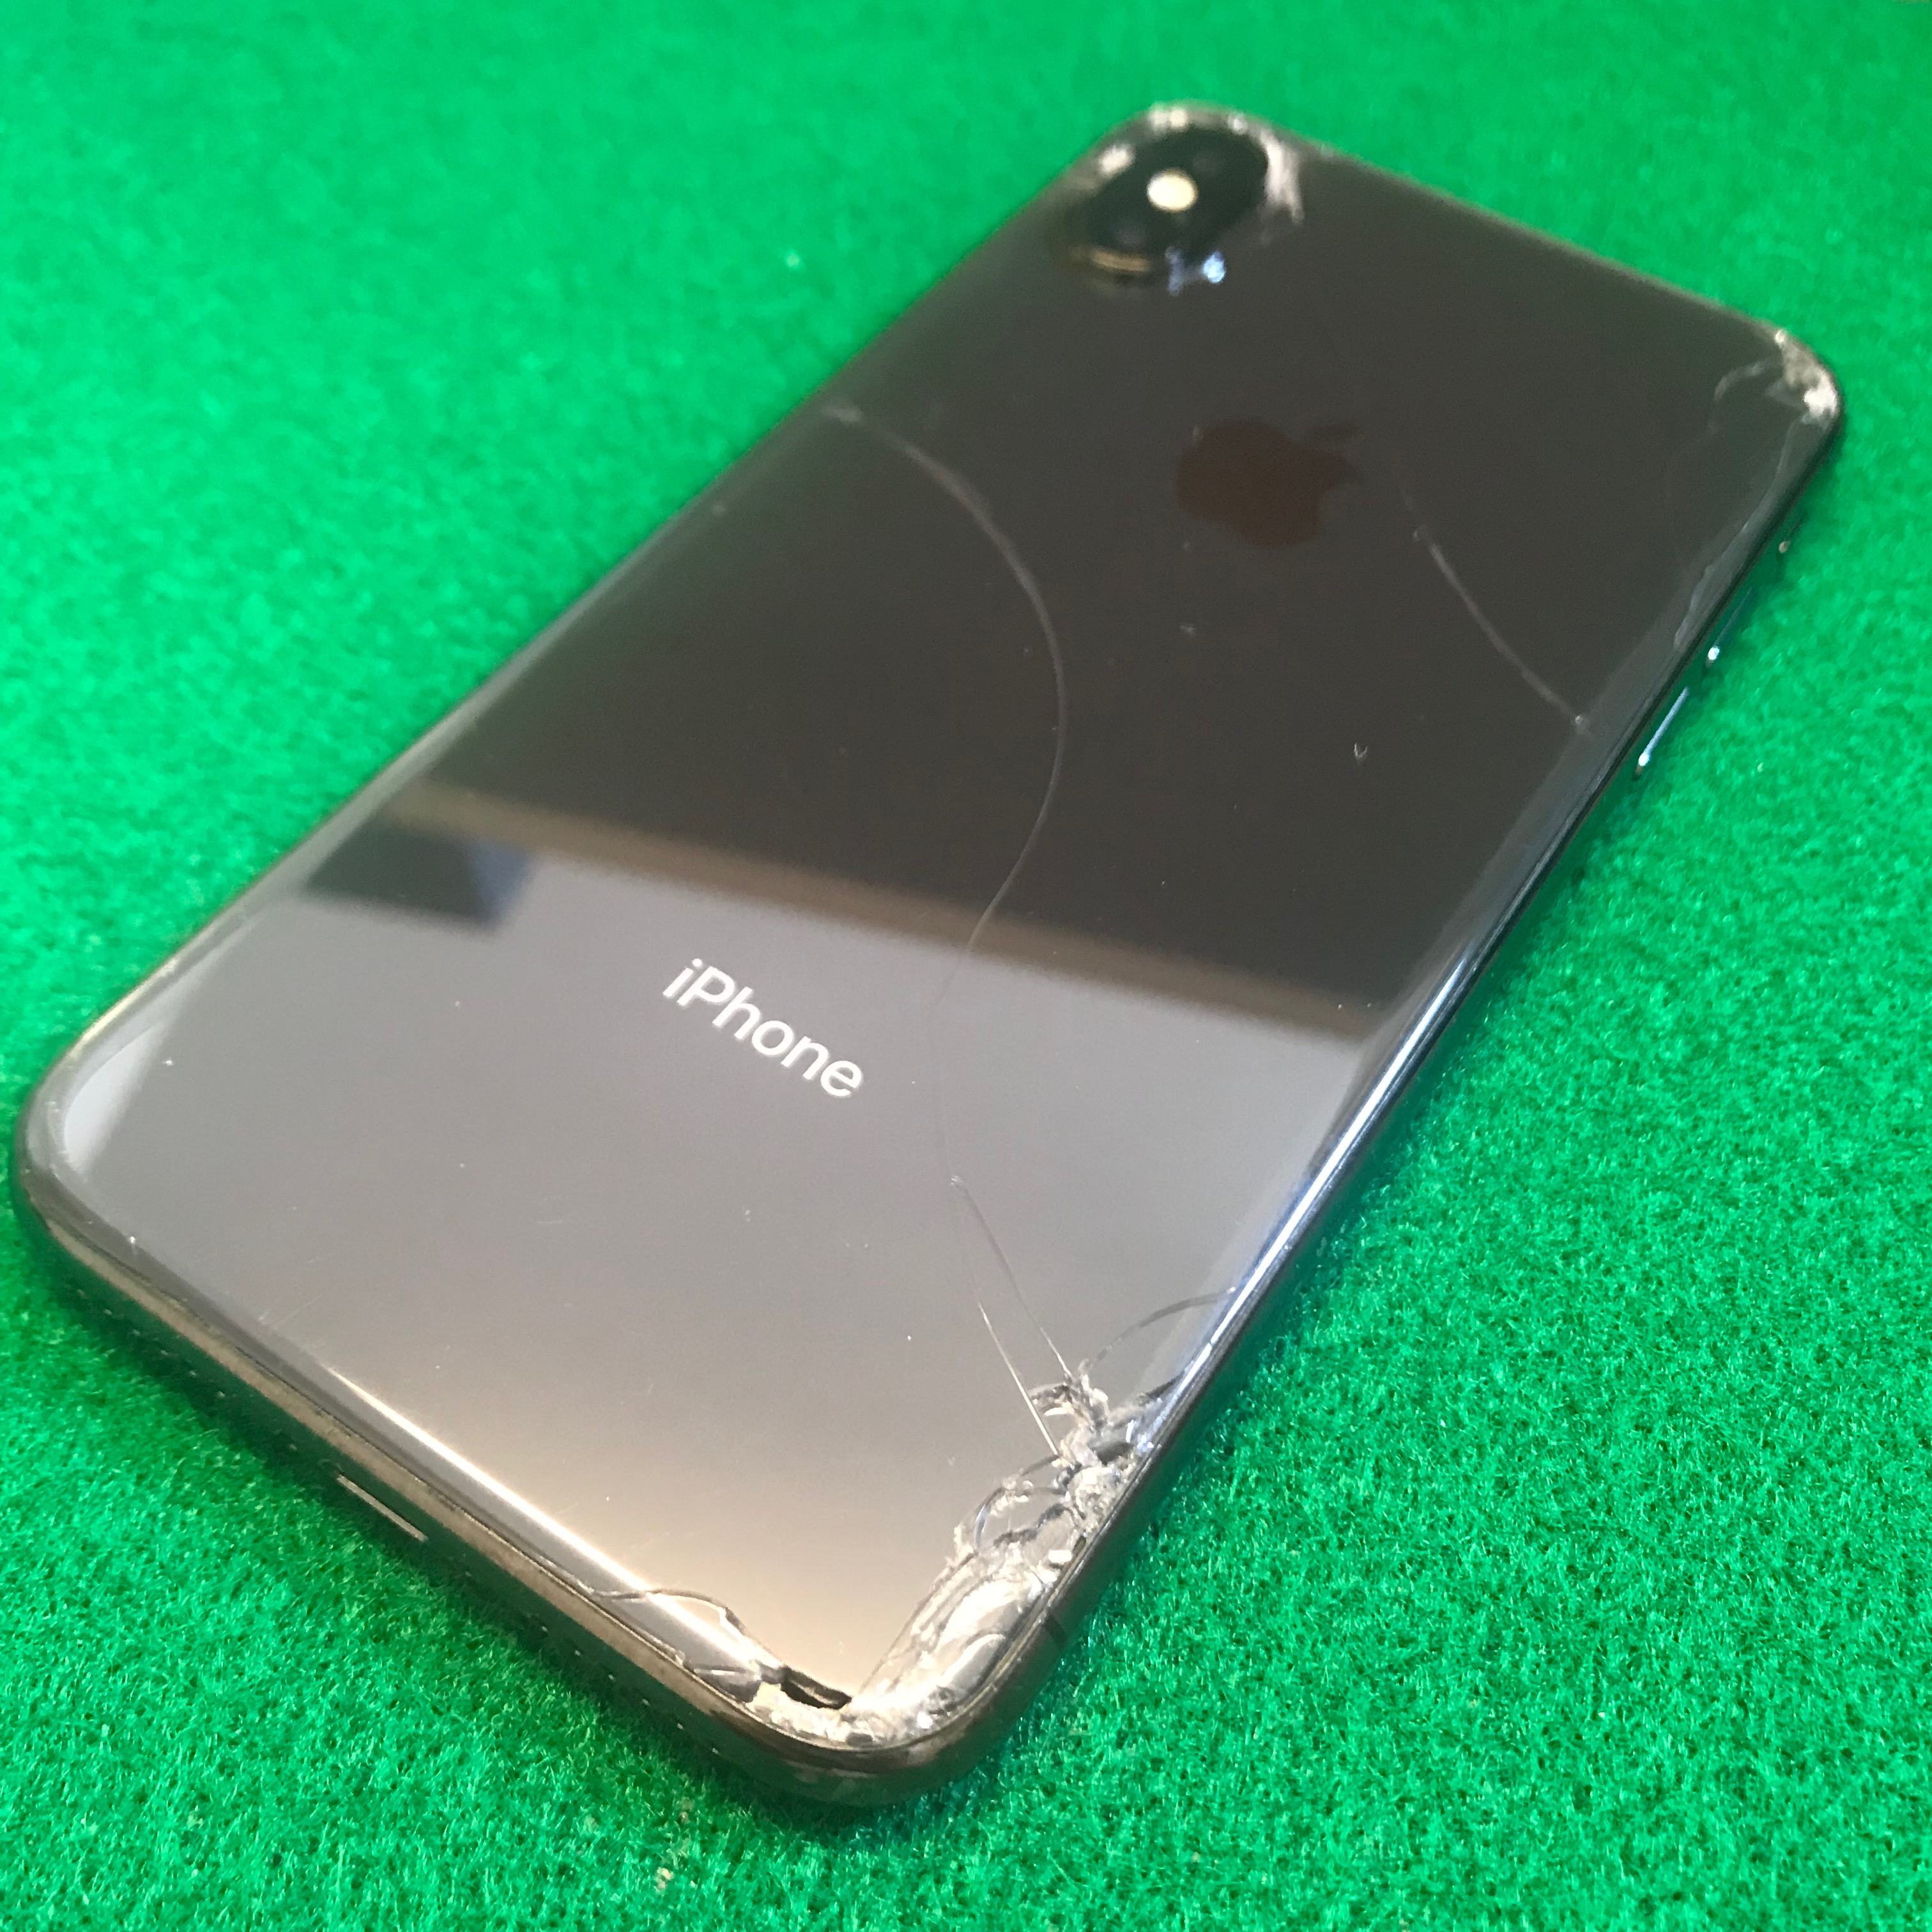 立川市からのお客様 Iphonex アイフォンx の背面ガラス交換修理 機種 Iphone X 修理事例のご紹介